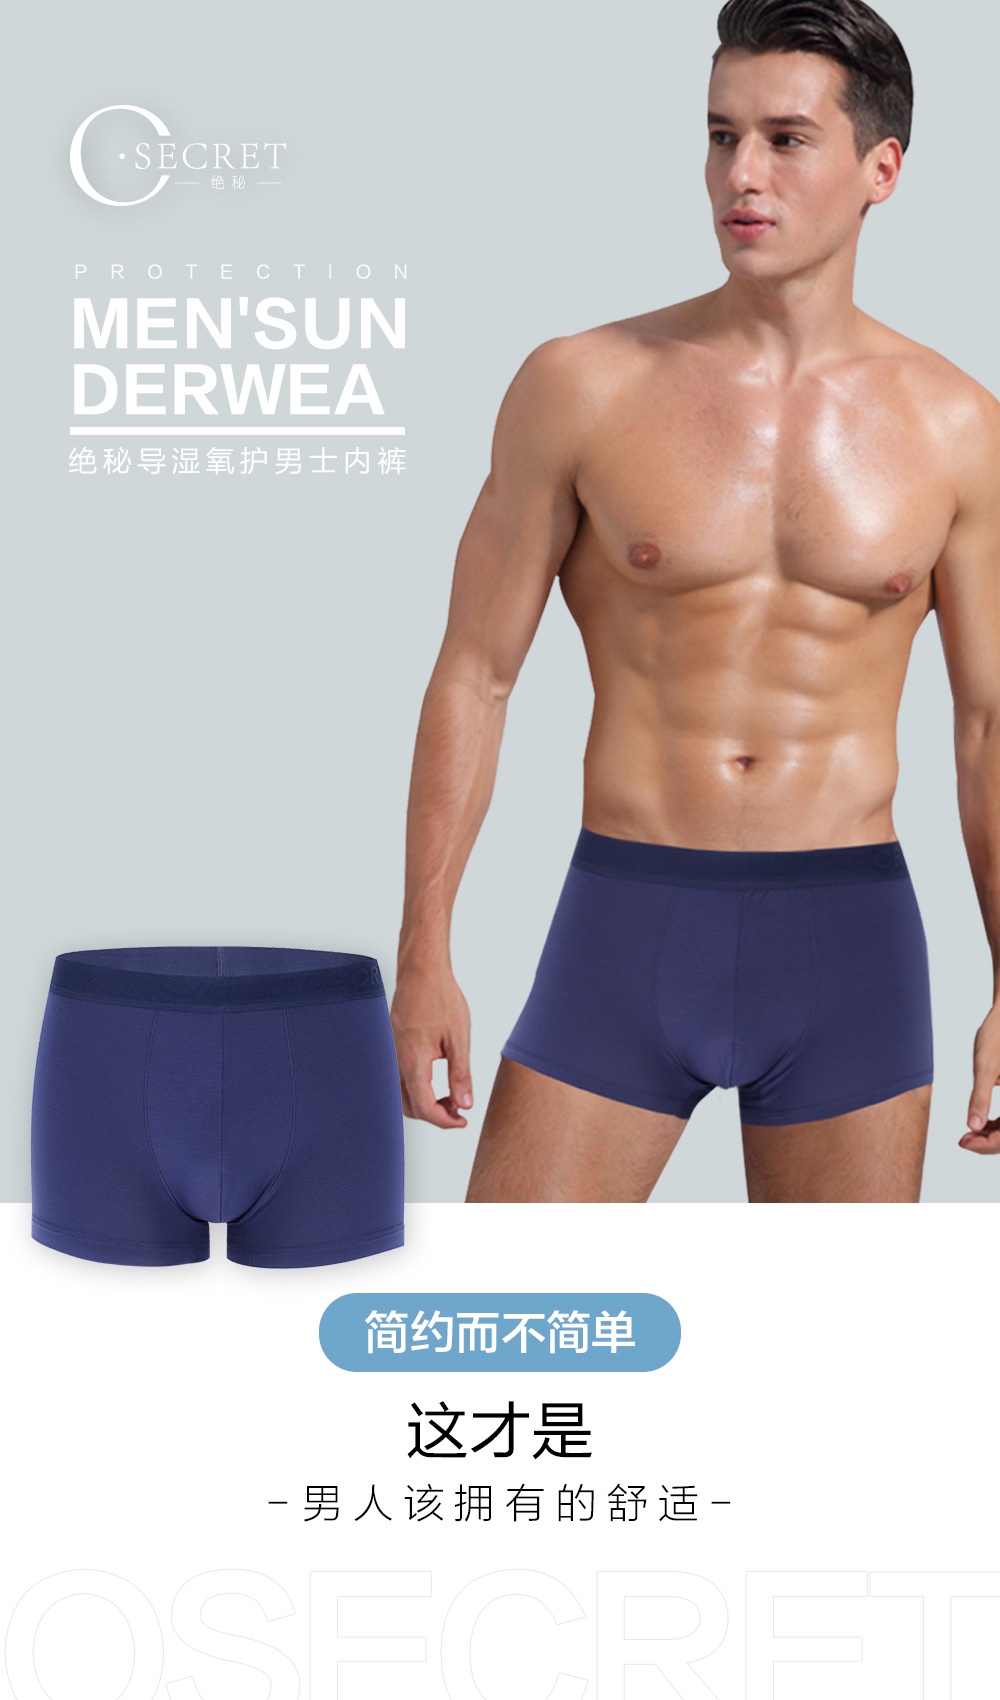 💕O’SECRET 
绝秘导湿氧护男士内裤（一盒两条的价格）
新内裤
新风尚详情图2